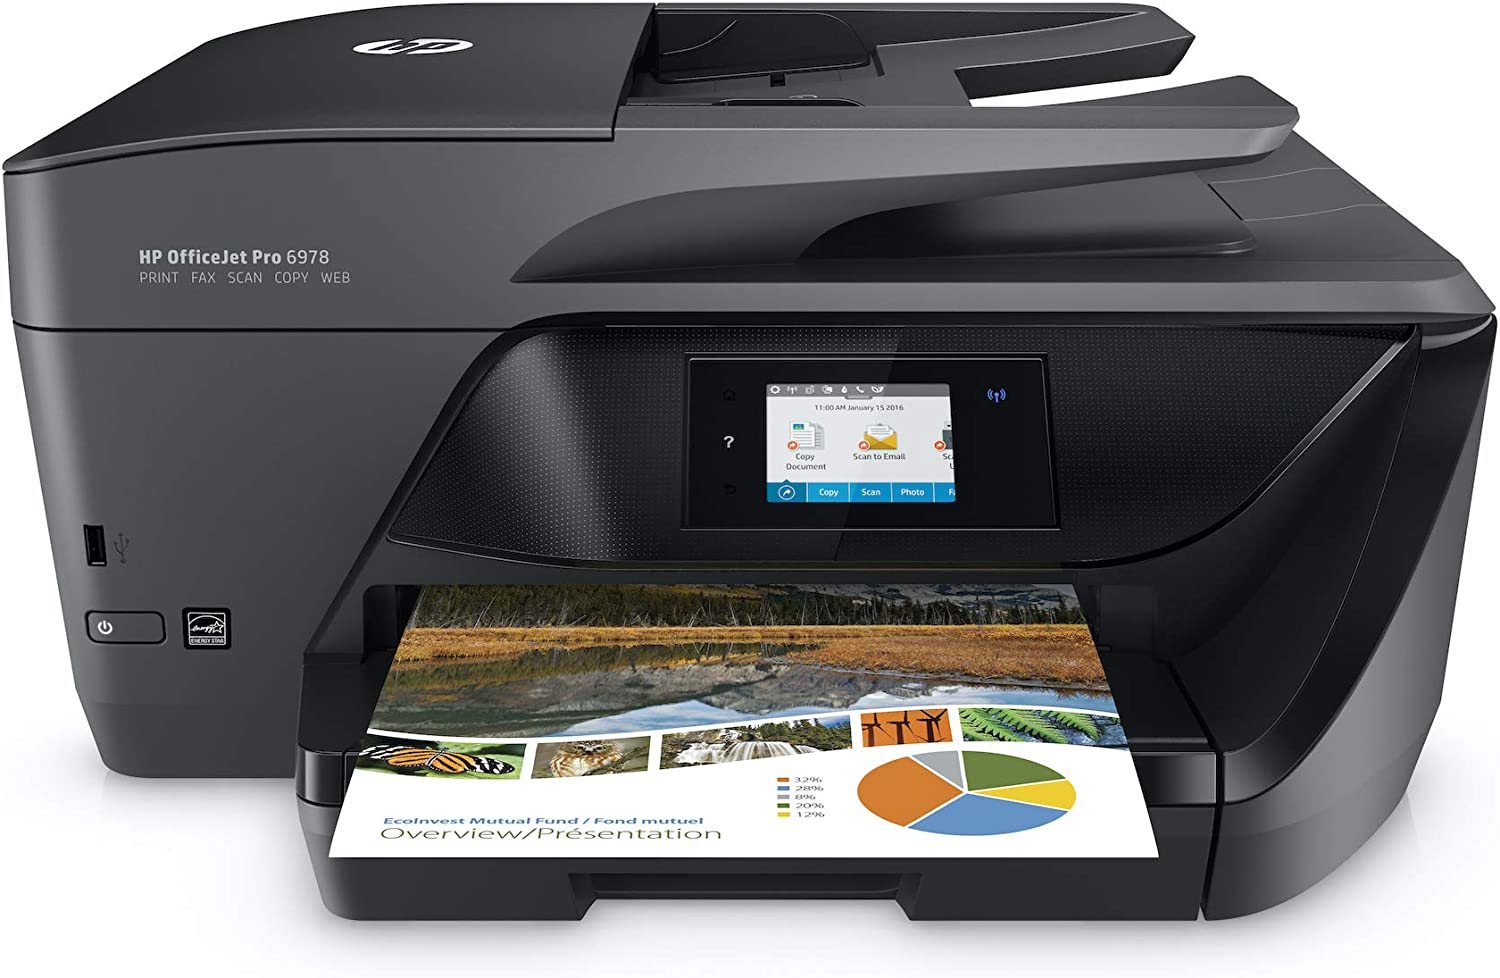  4. HP OfficeJet Pro Wireless Inkjet Printers 